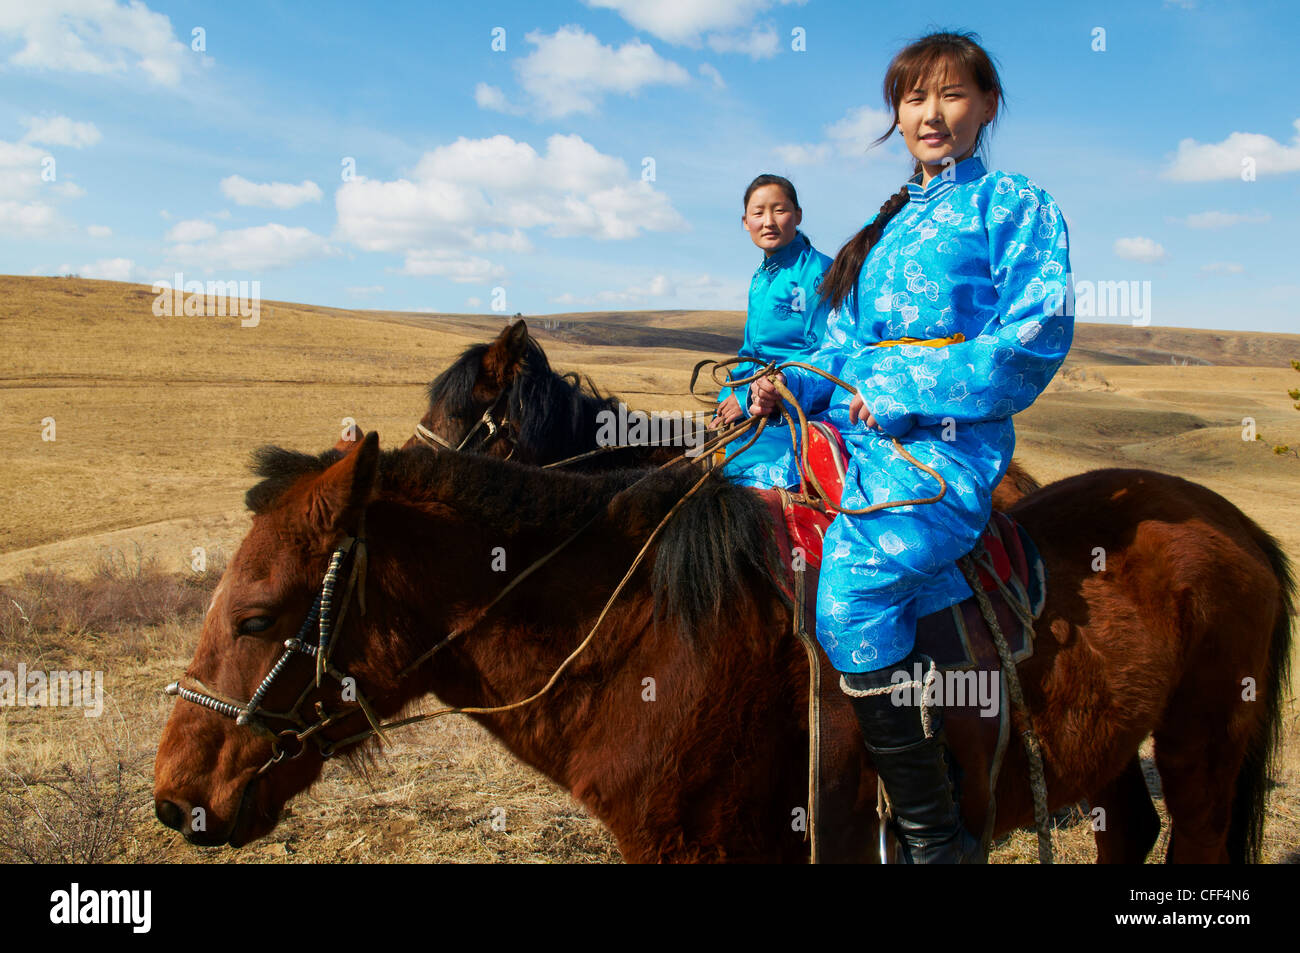 Les jeunes femmes en costume traditionnel mongol (deel) de l'équitation, province de Khovd, Mongolie, Asie centrale, Asie Banque D'Images